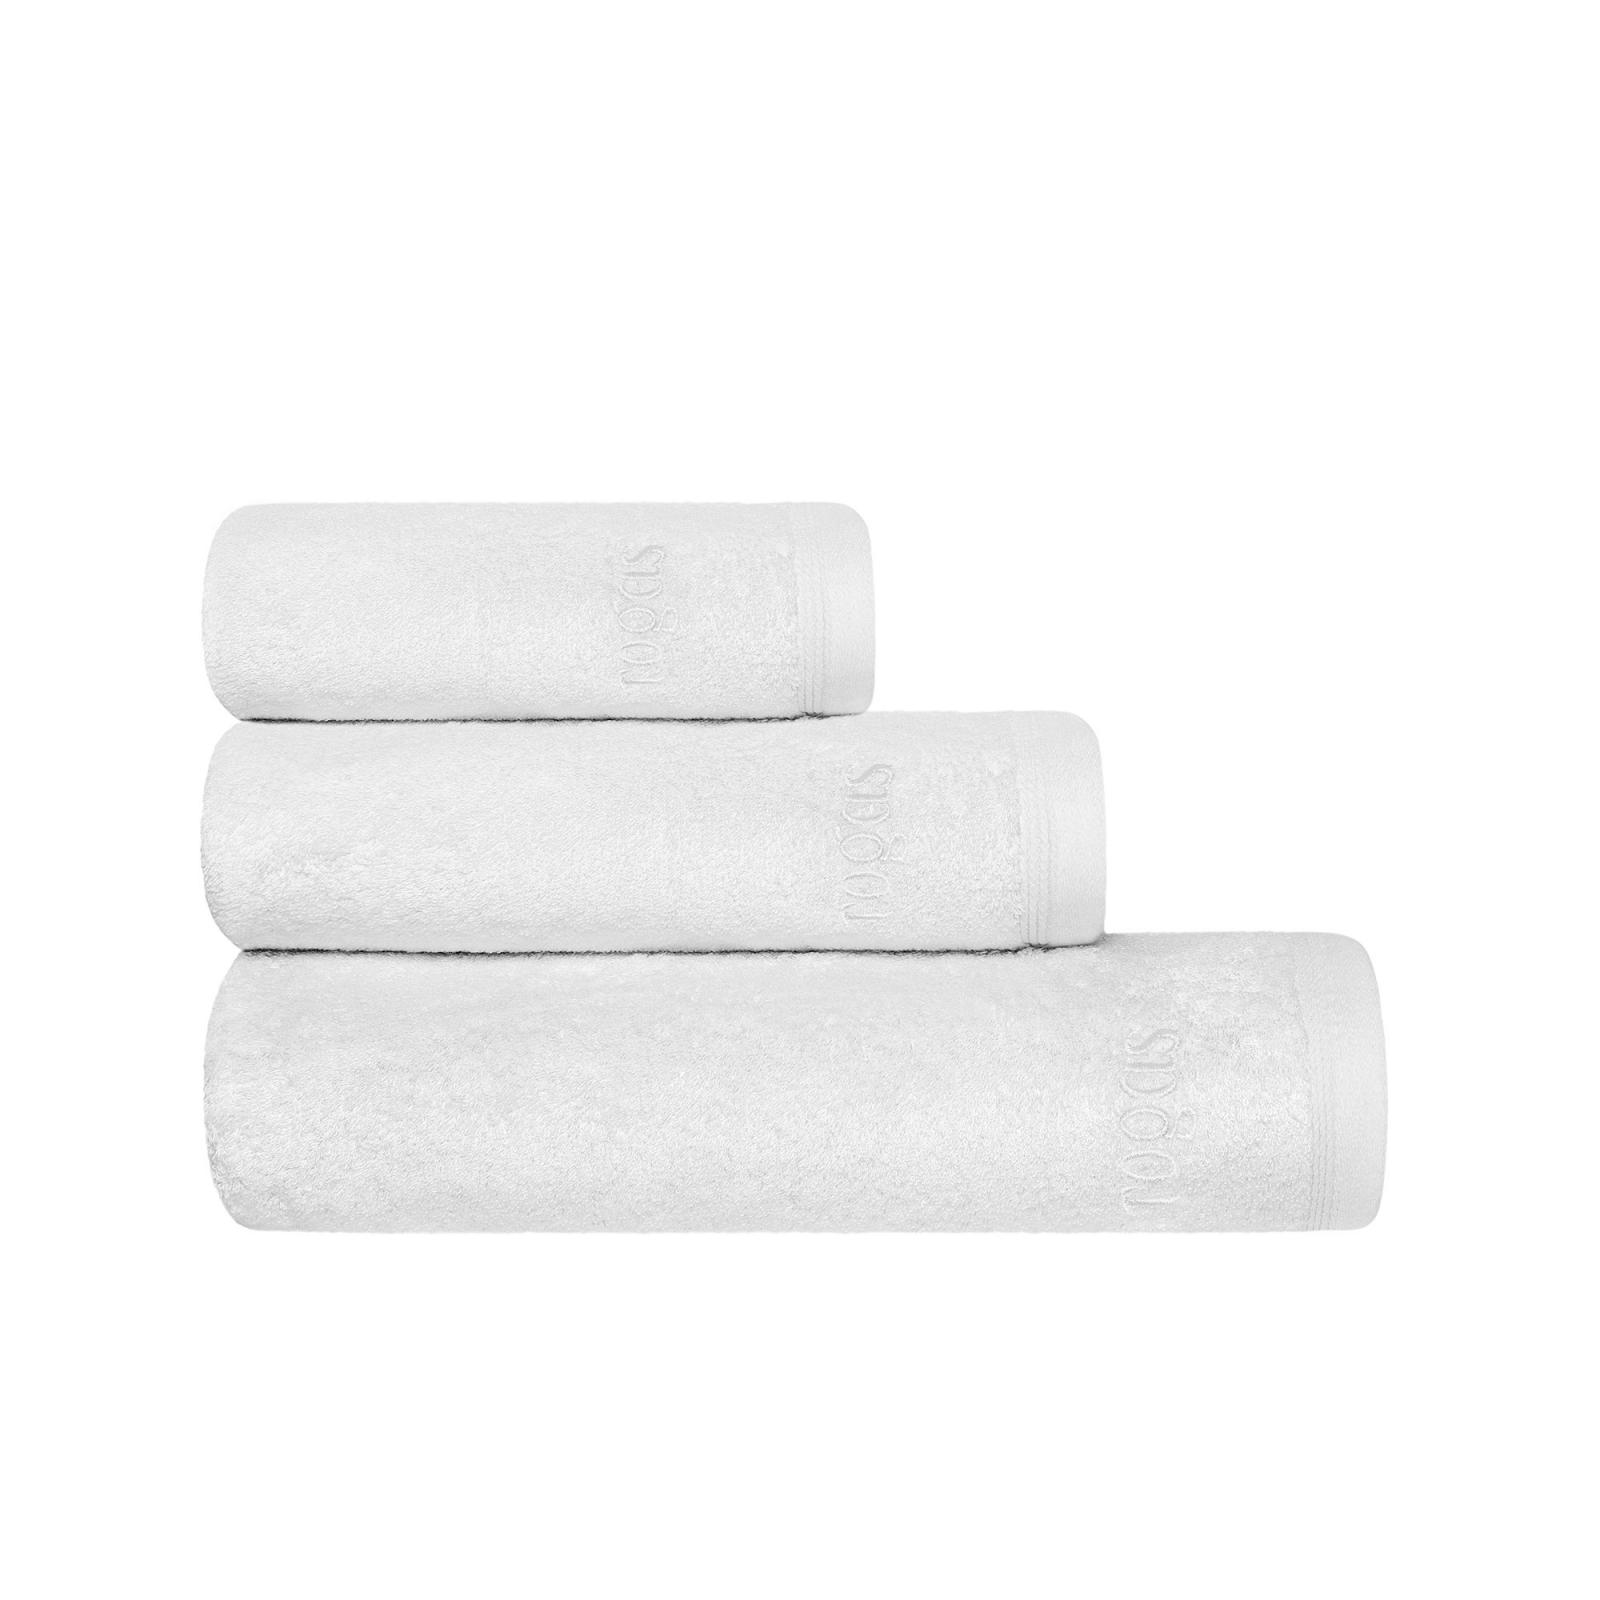 Полотенце 40х60 см Пуатье белое Togas полотенце togas миа бел экру 40х60